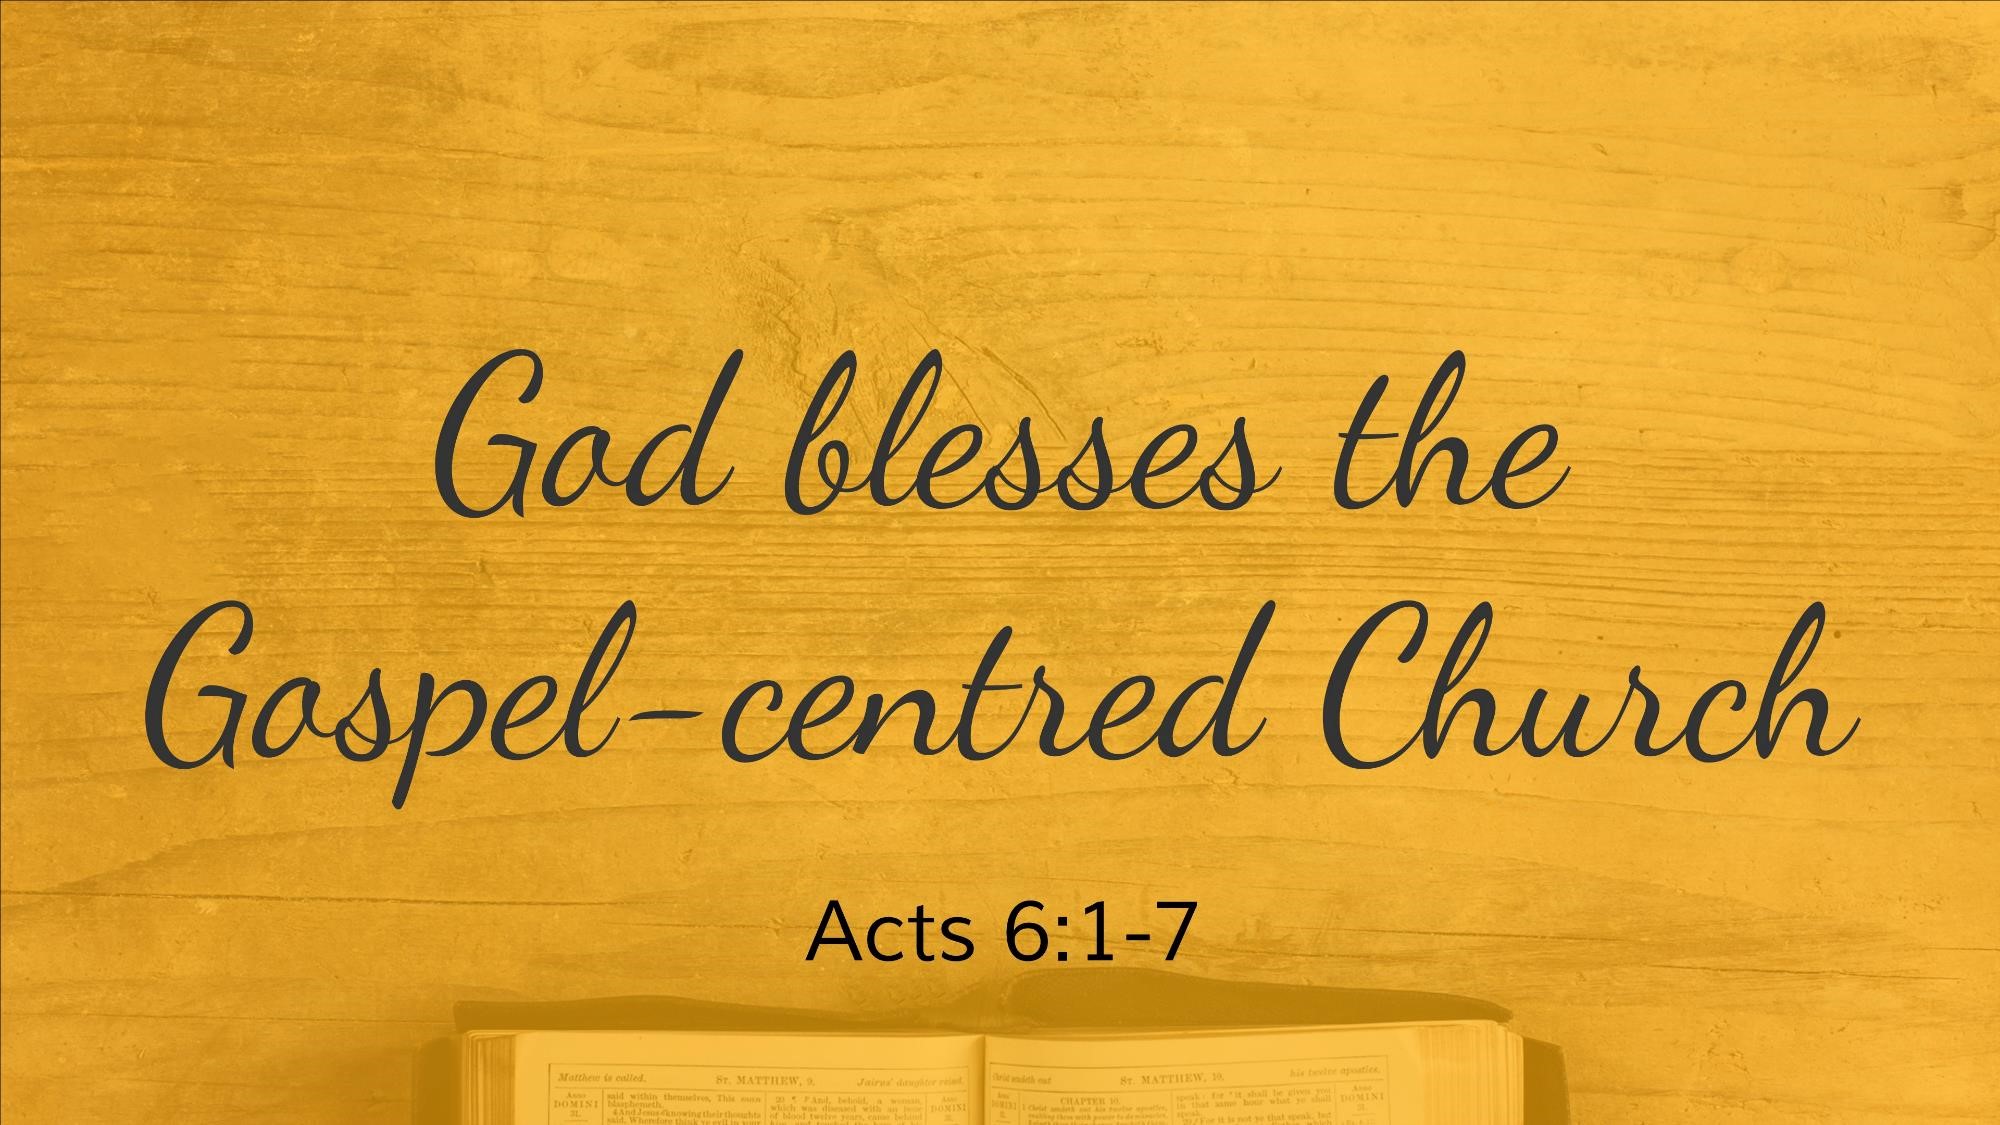 God blesses the Gospel-centred Church